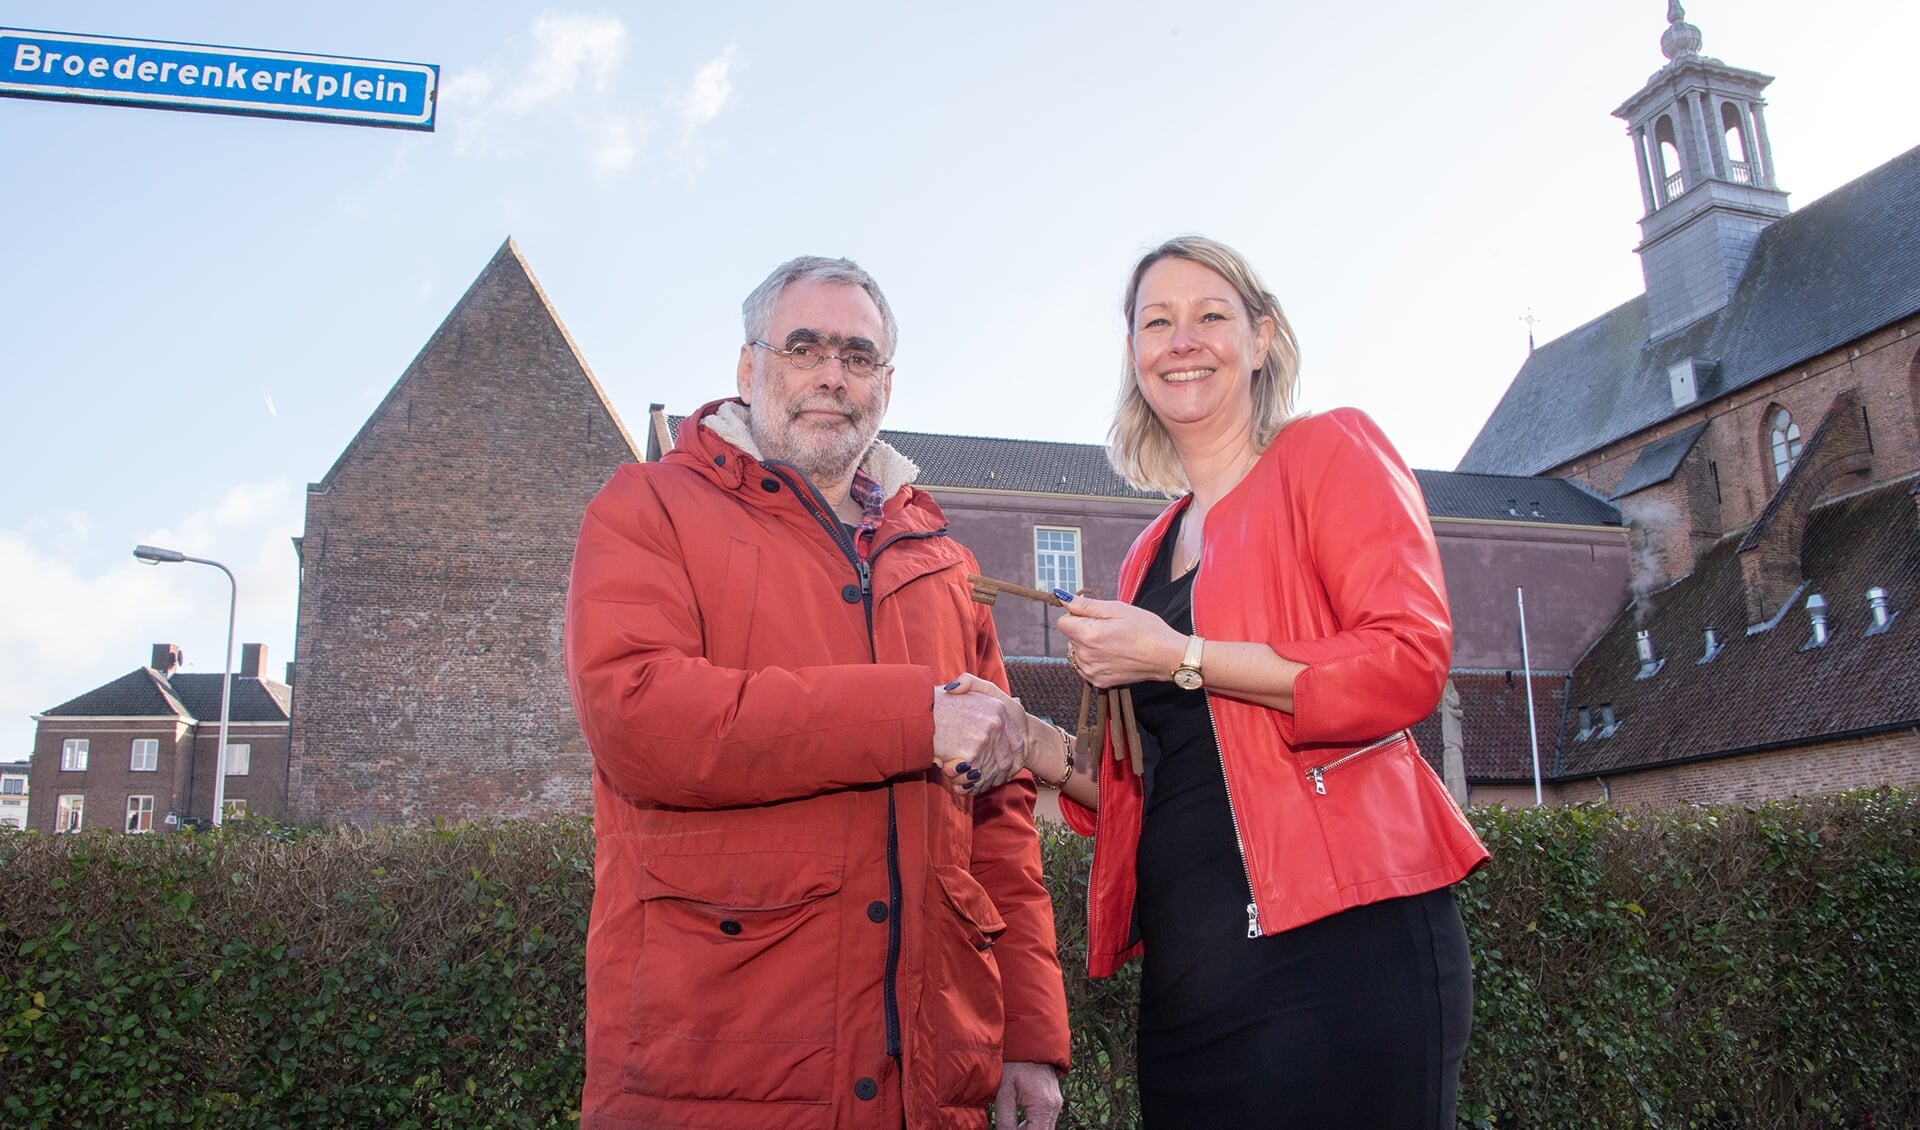 Anton de Lange ontving de sleutel van het Broederenklooster uit handen van wethouder Laura Werger. Foto: Willem Feith